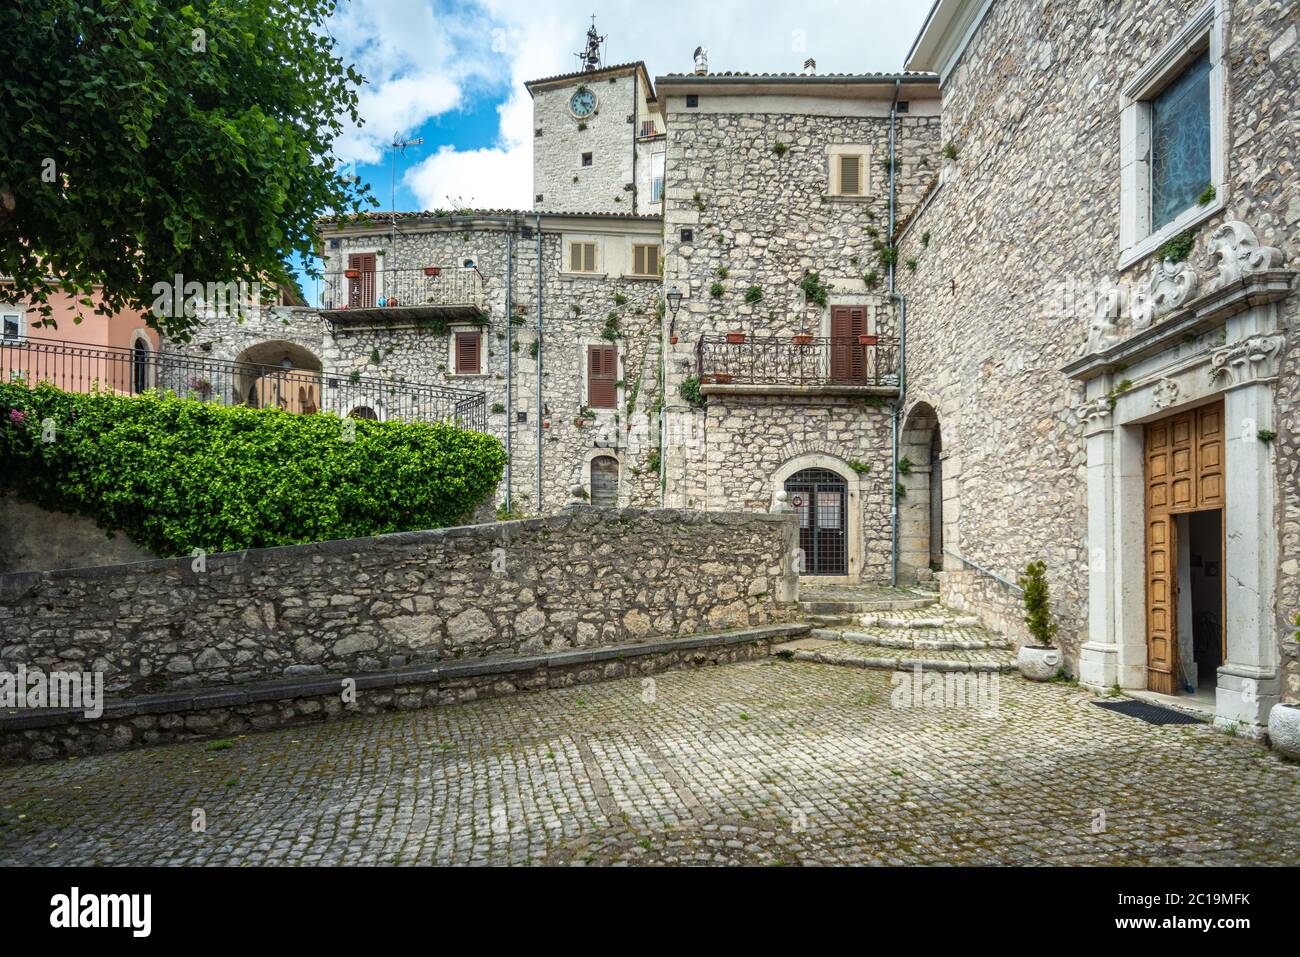 stone houses in the montenero village. Montenero Valcocchiara, Molise region, Italy, Europe Stock Photo